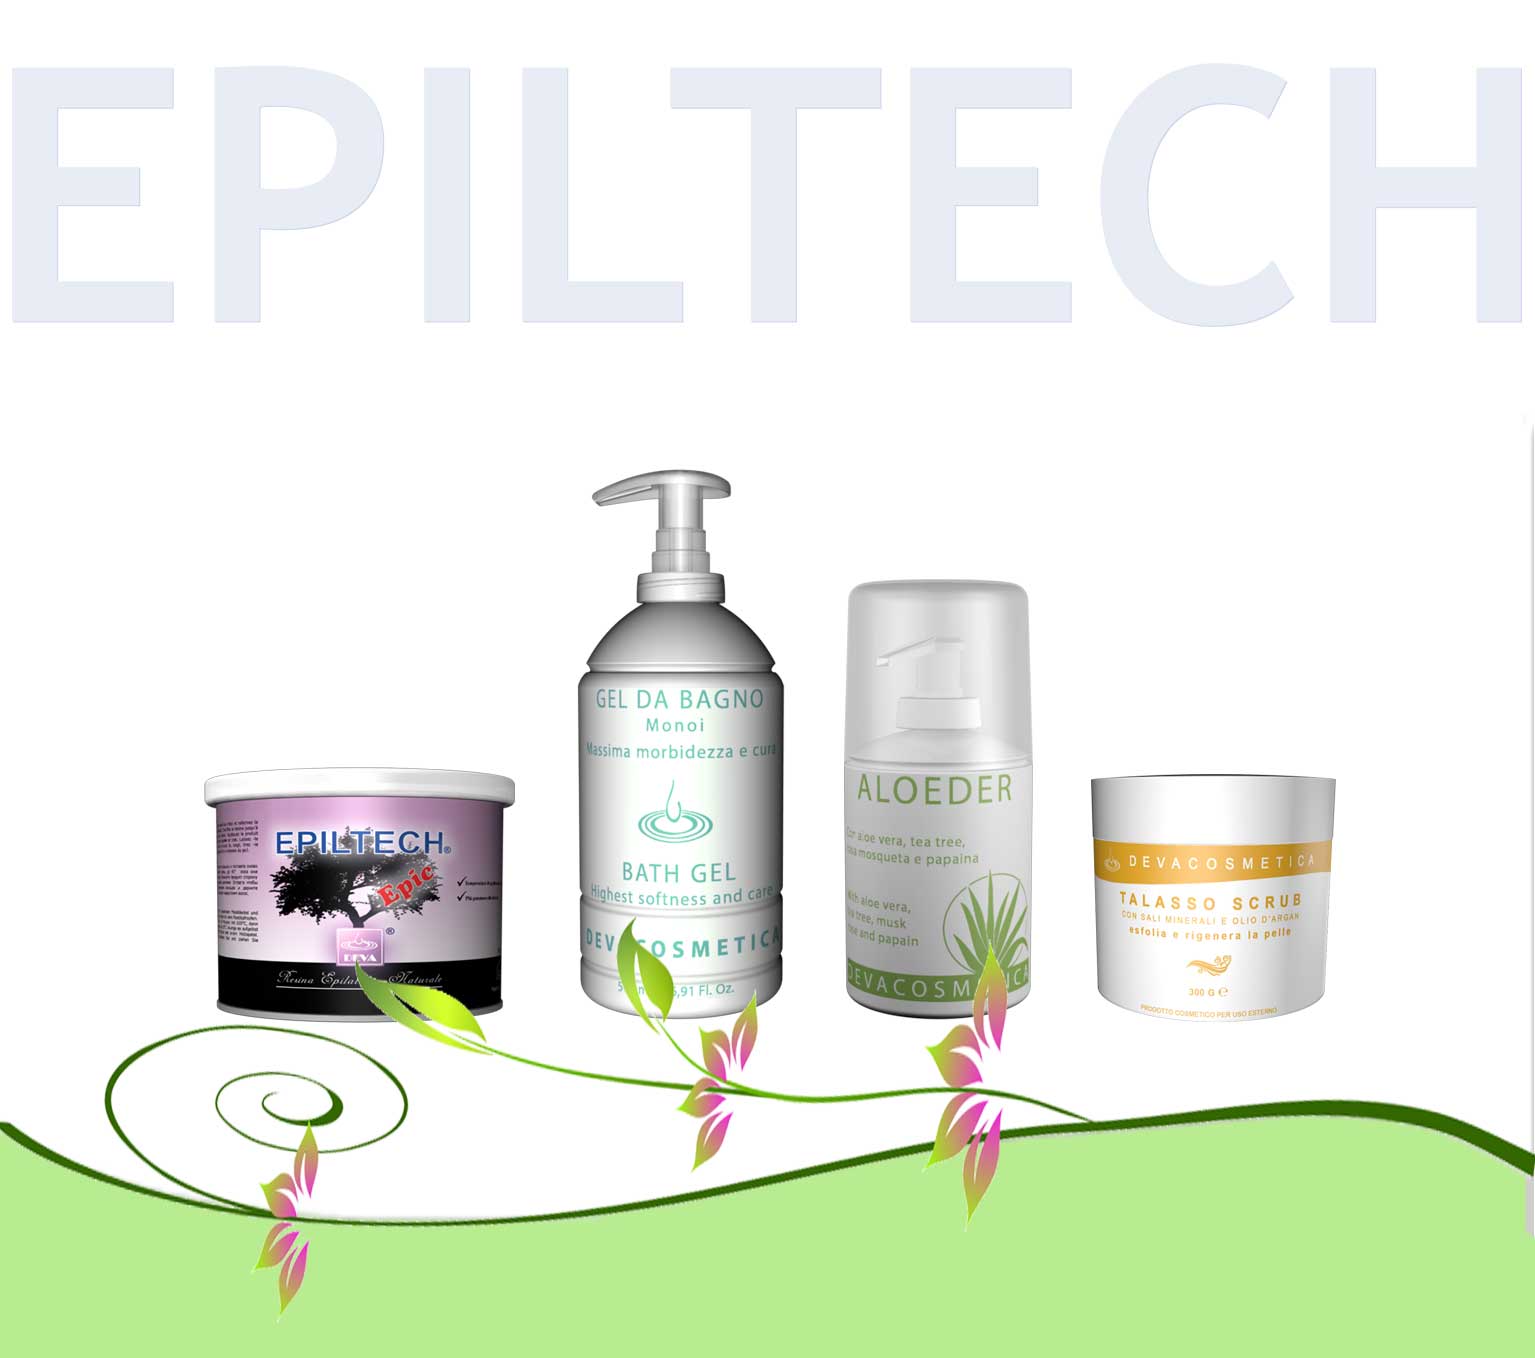 Offerta Epiltech 5